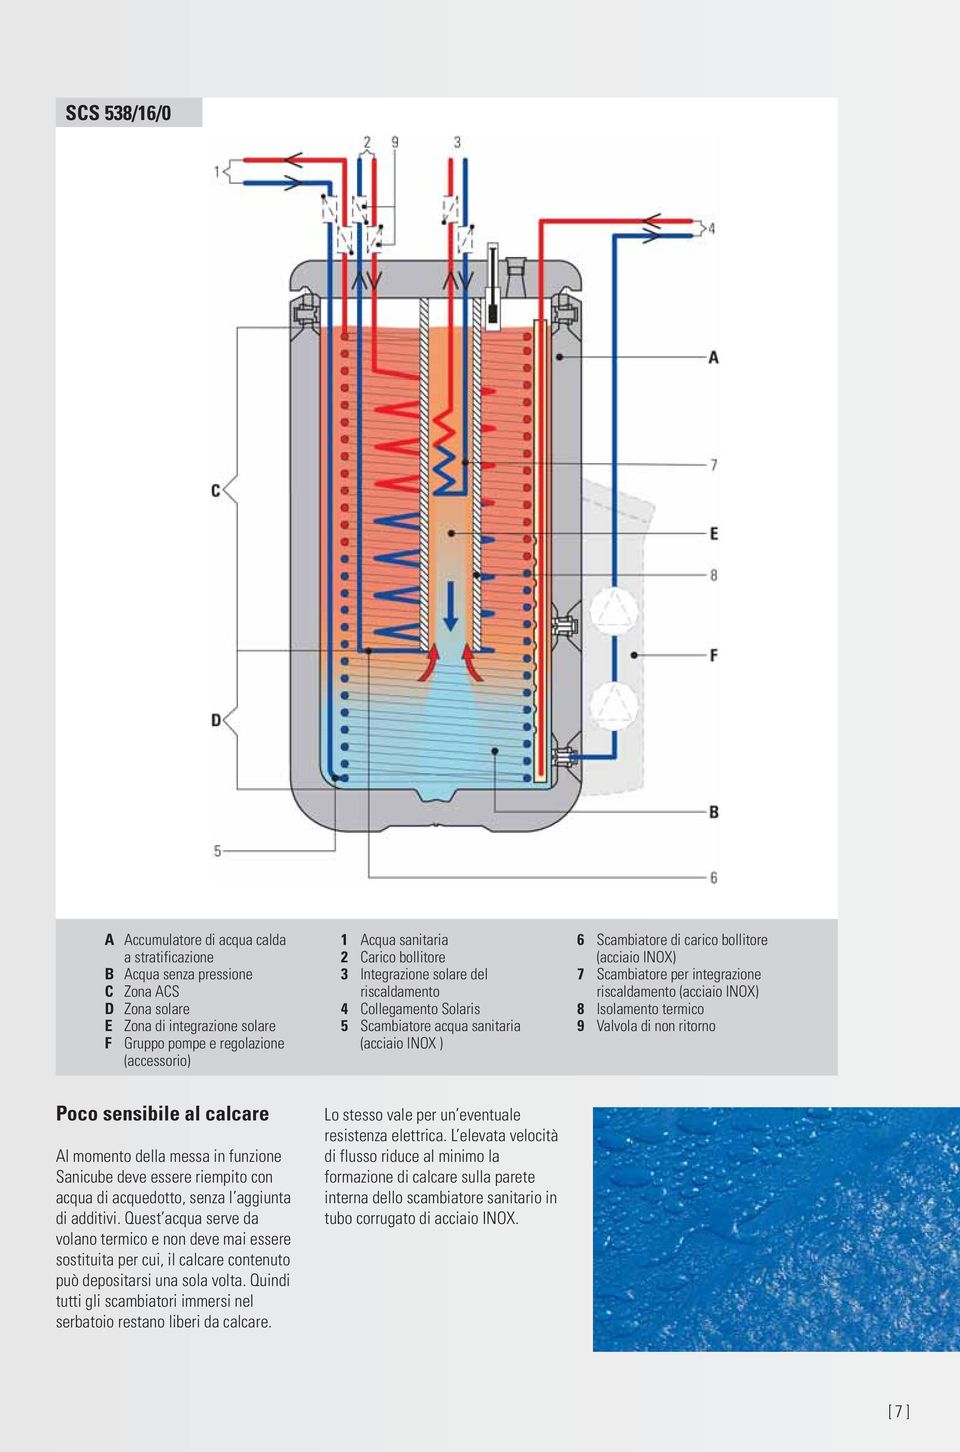 integrazione riscaldamento (acciaio INOX) 8 Isolamento termico 9 Valvola di non ritorno Poco sensibile al calcare Al momento della messa in funzione Sanicube deve essere riempito con acqua di